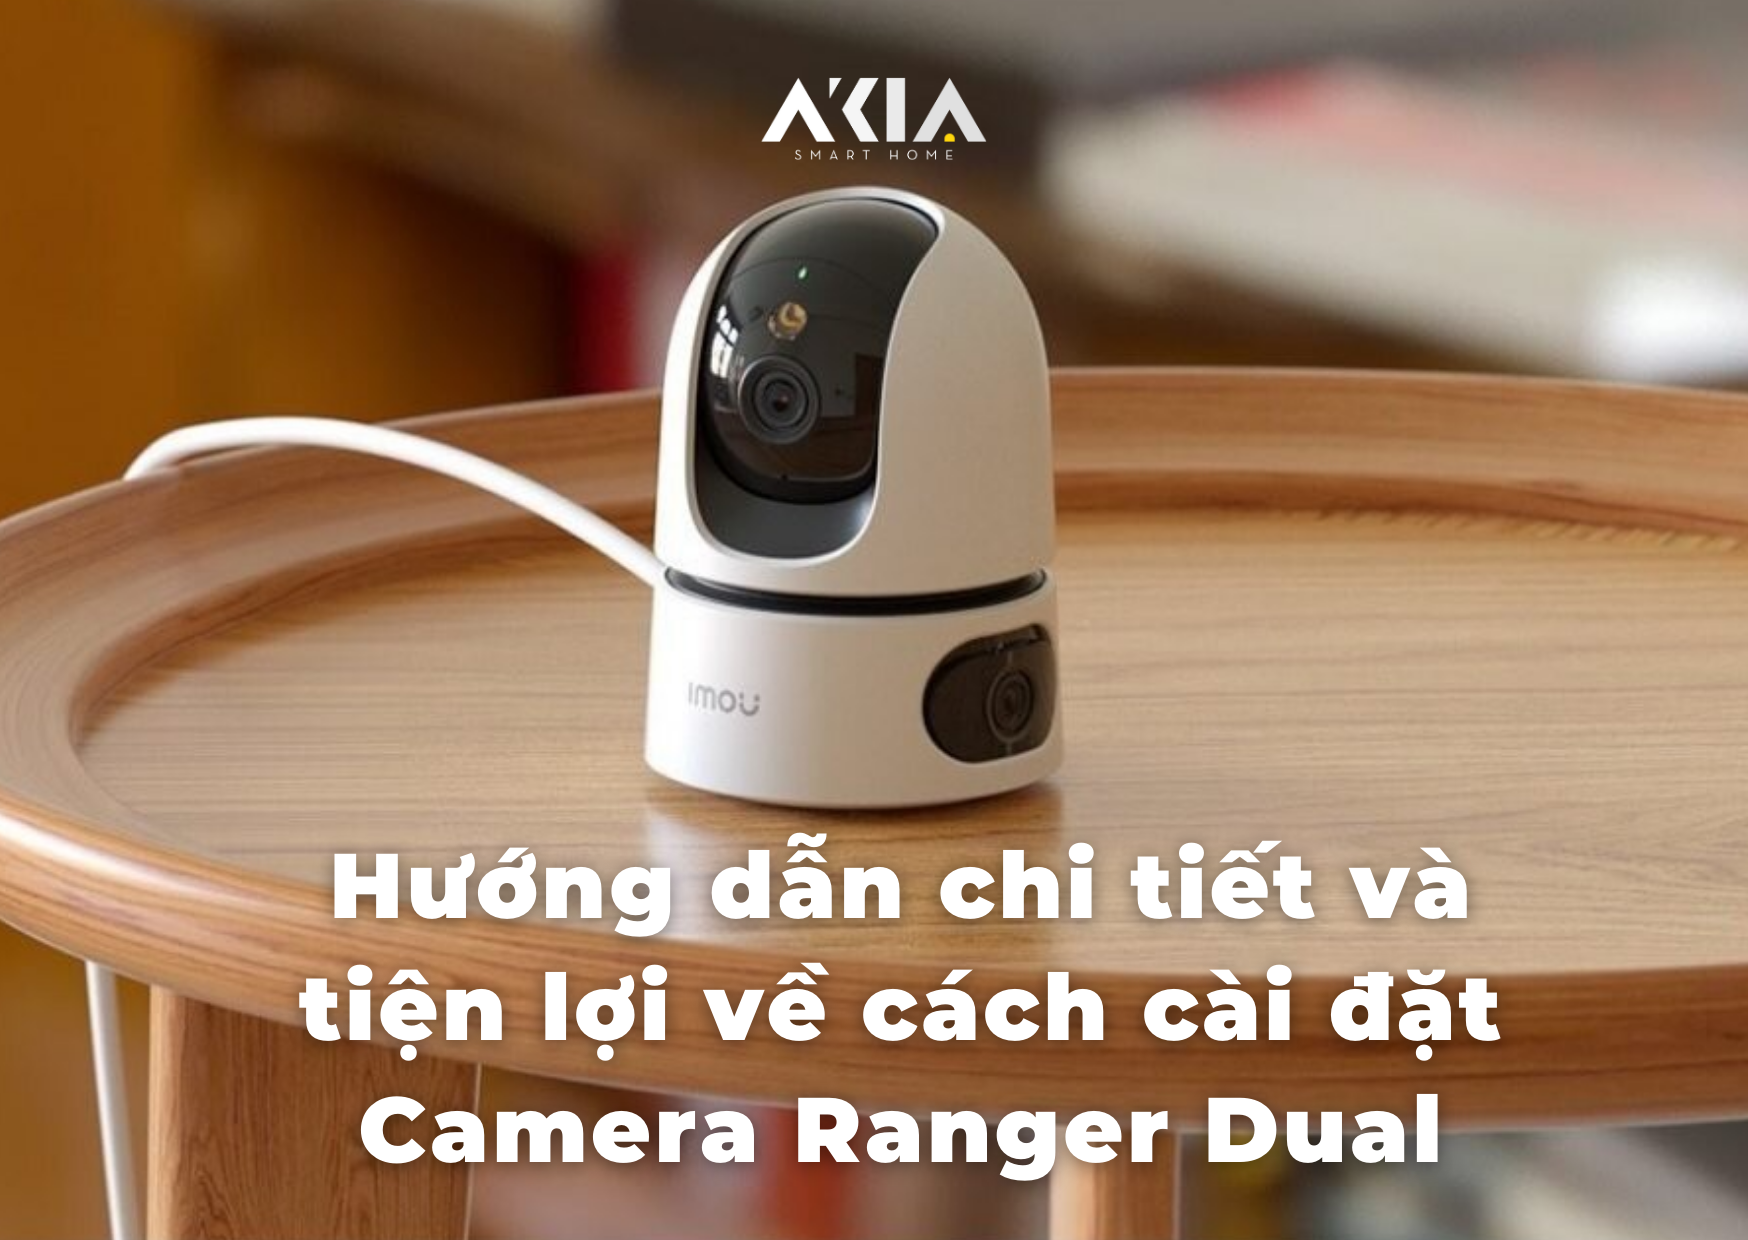 Hướng Dẫn Chi Tiết Về Cách Cài Đặt Camera Ranger Dual